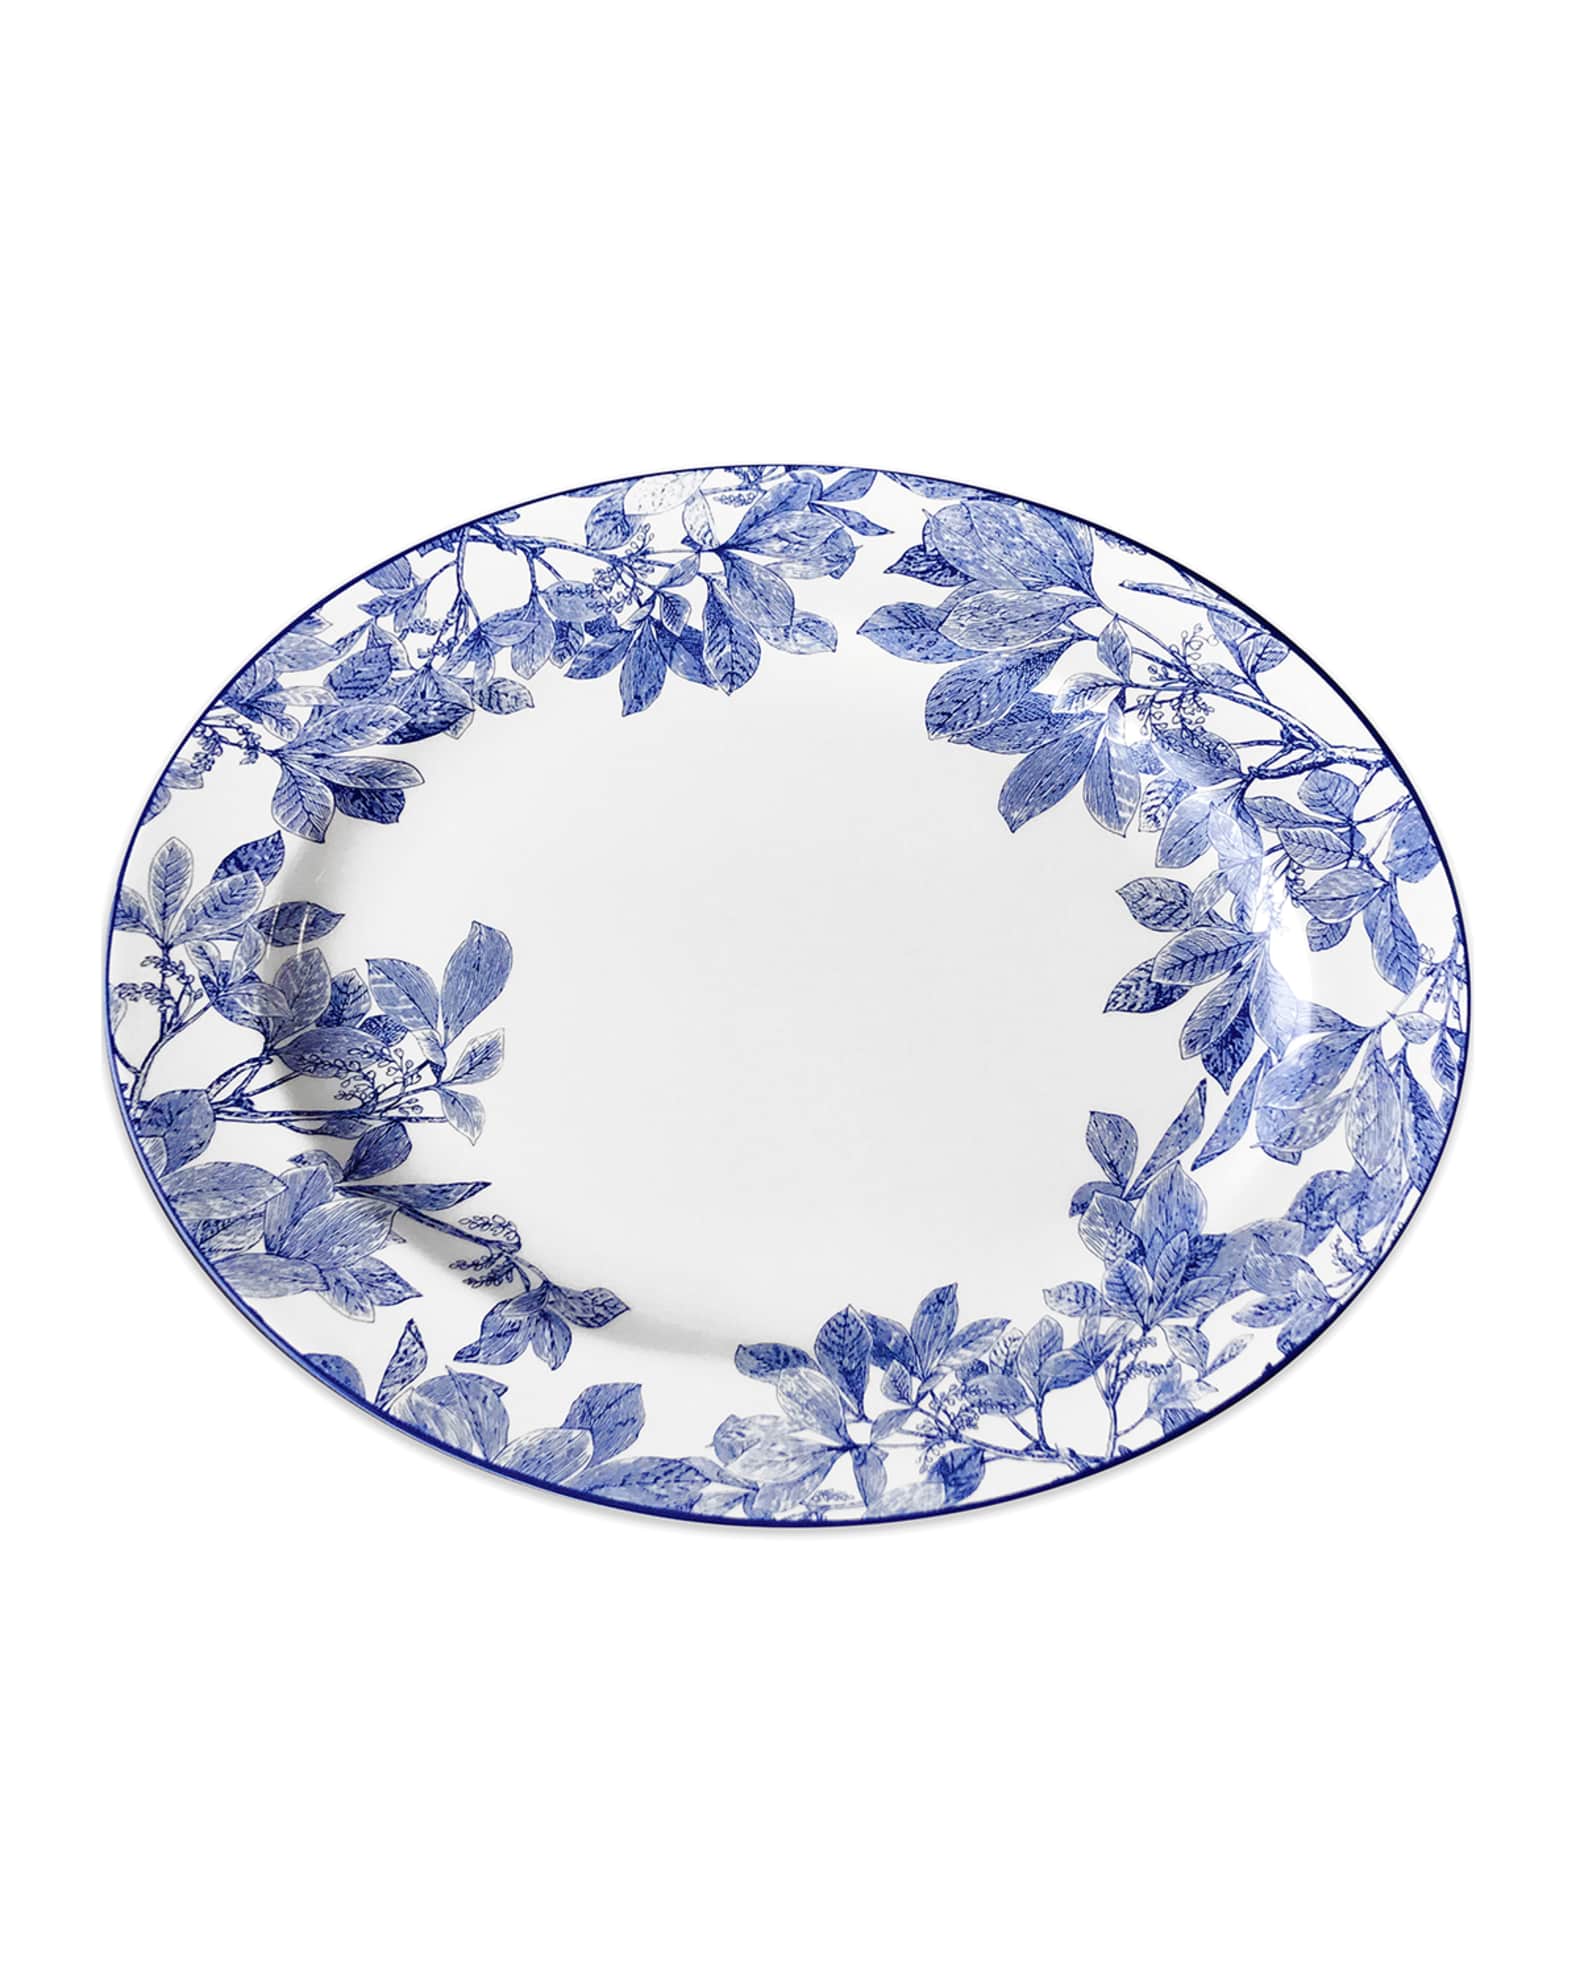 Caskata Arbor Blue Rimmed Oval Platter, 16